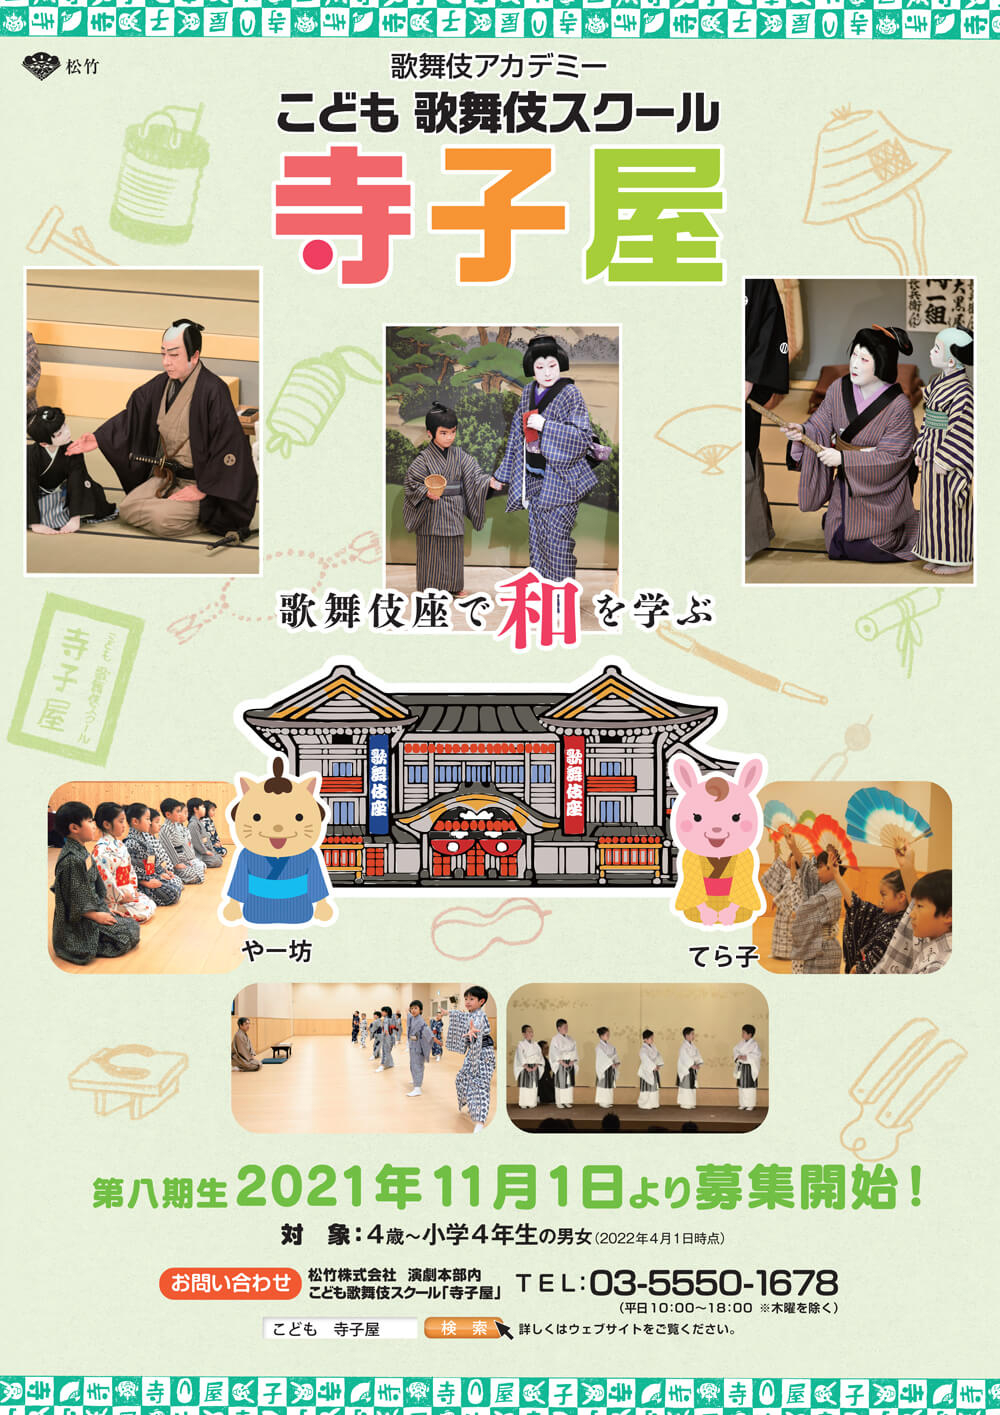 こども歌舞伎スクール「寺子屋」第八期生募集、お稽古見学会開催のお知らせ